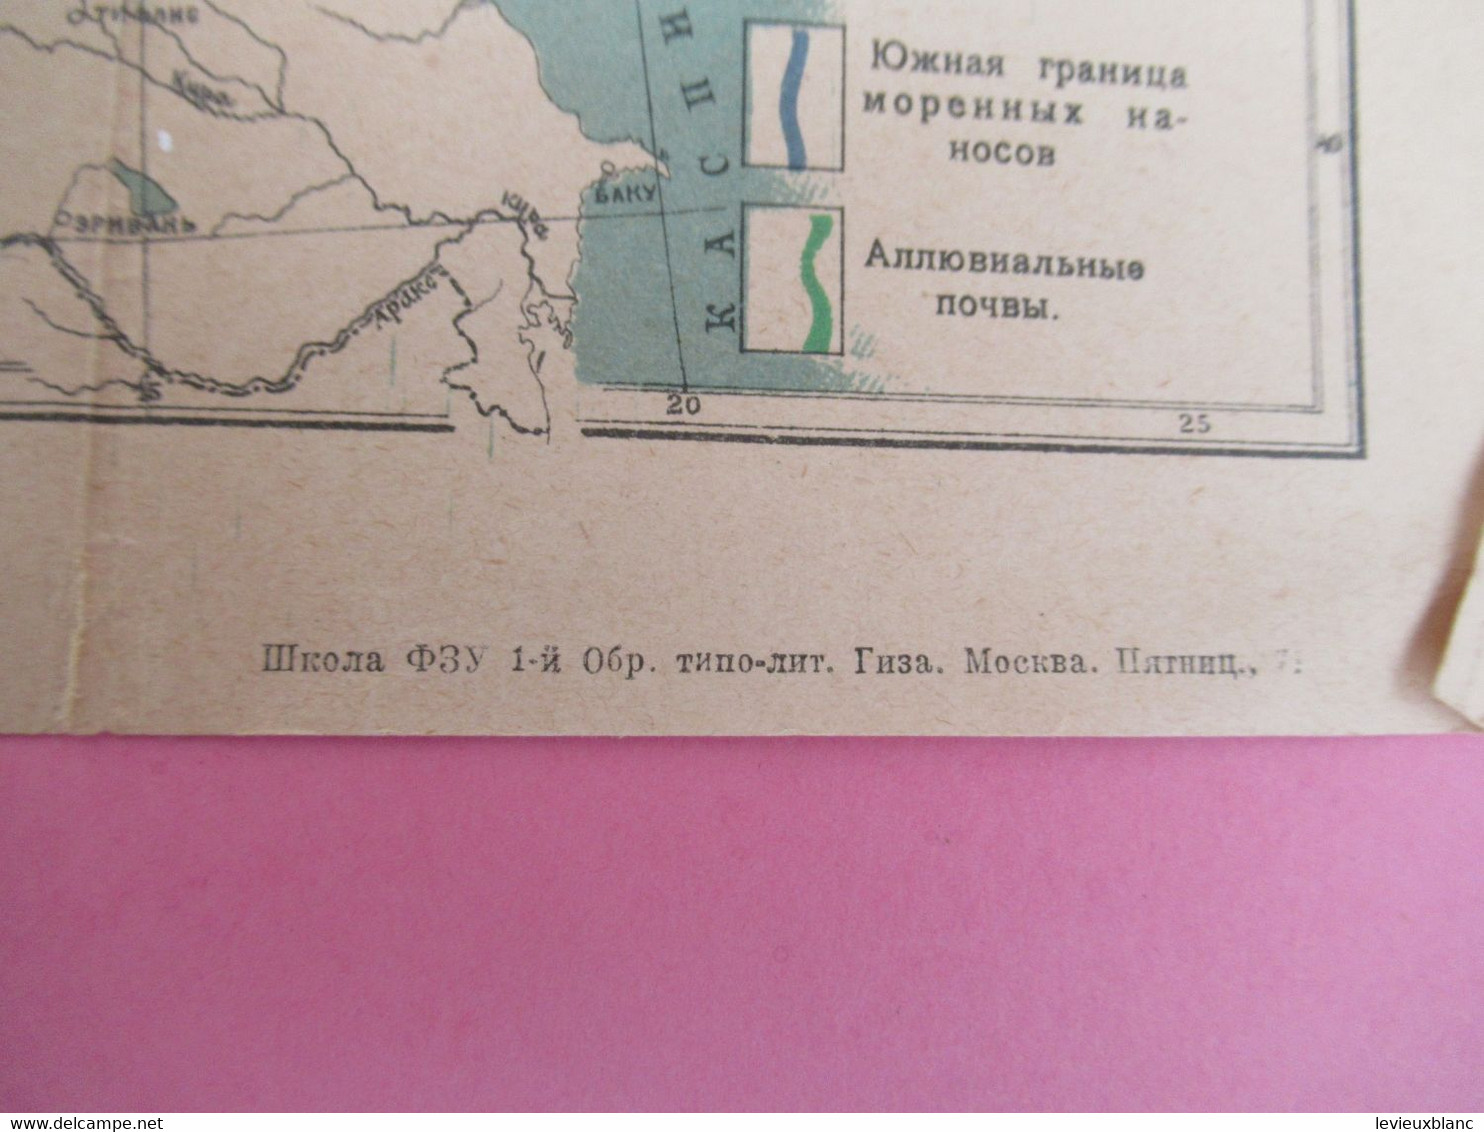 Carte Géographique Ancienne/Russie/ CCCP  / Hydrographique/Sokolov Et Ouvanov/Vers 1917-1925        PGC3768 - Langues Slaves